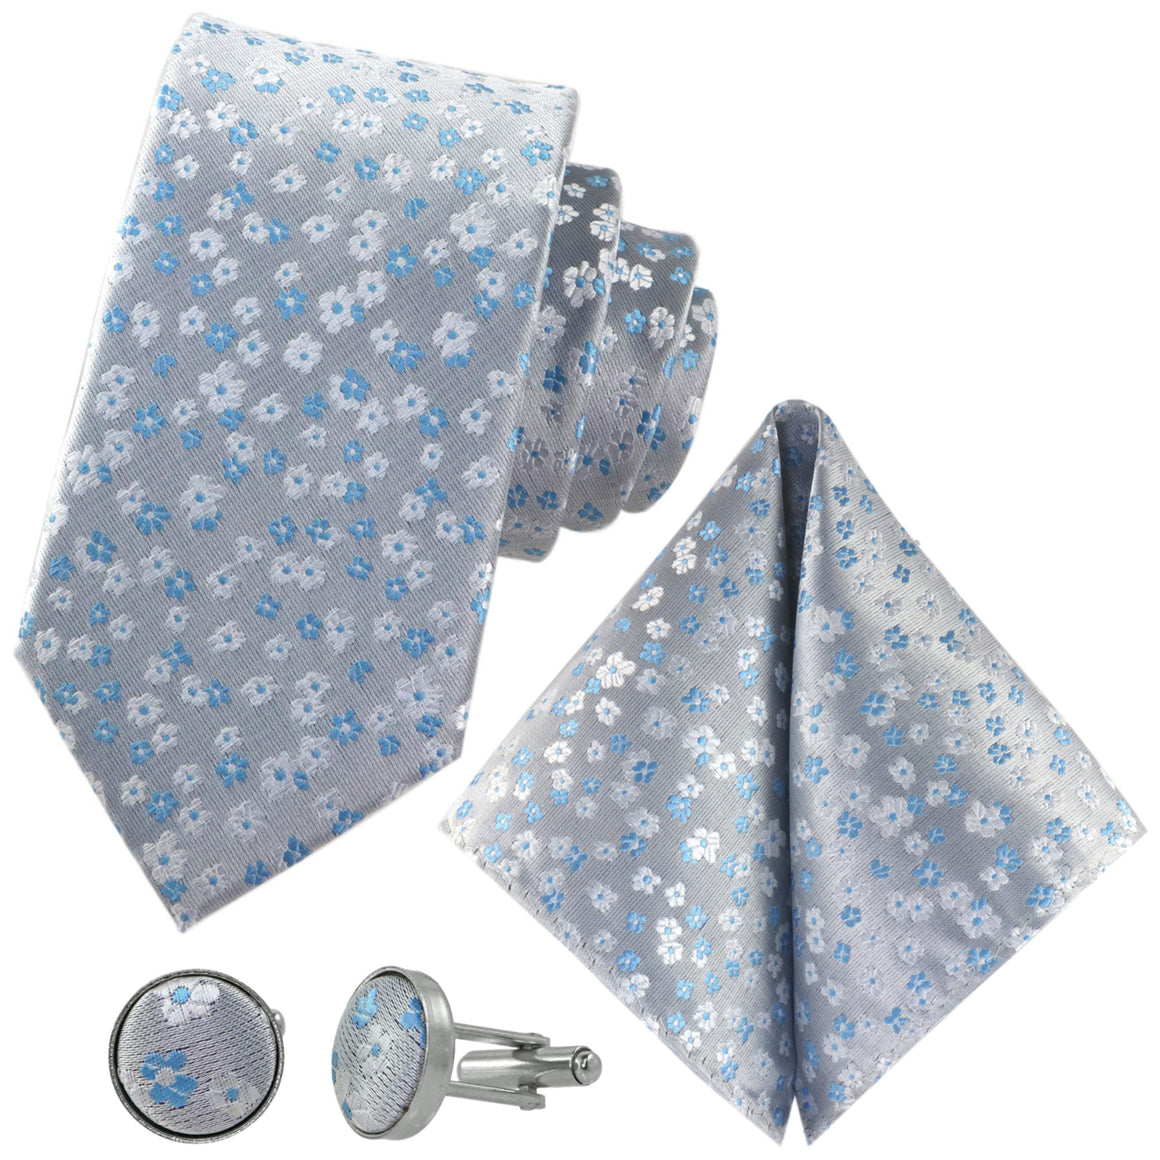 Sada kravat GASSANI 3-SET, šíře 8 cm, dlouhá, světle modrá pánská kravata, úzká svatební kravata